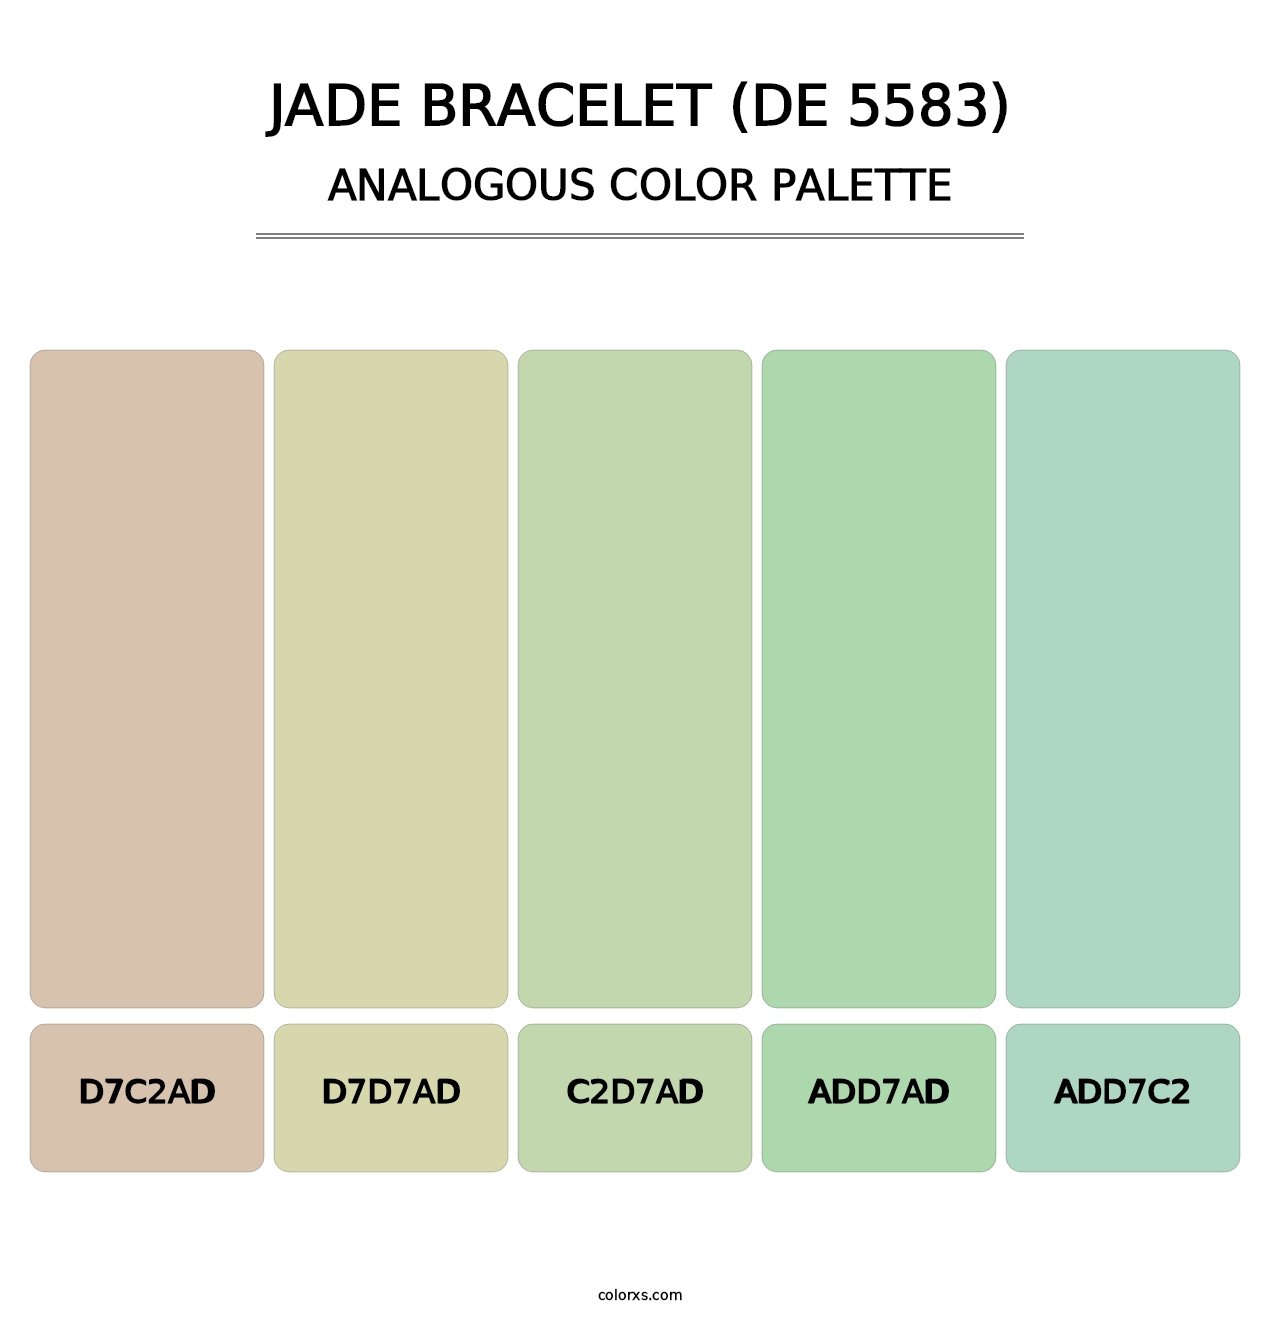 Jade Bracelet (DE 5583) - Analogous Color Palette